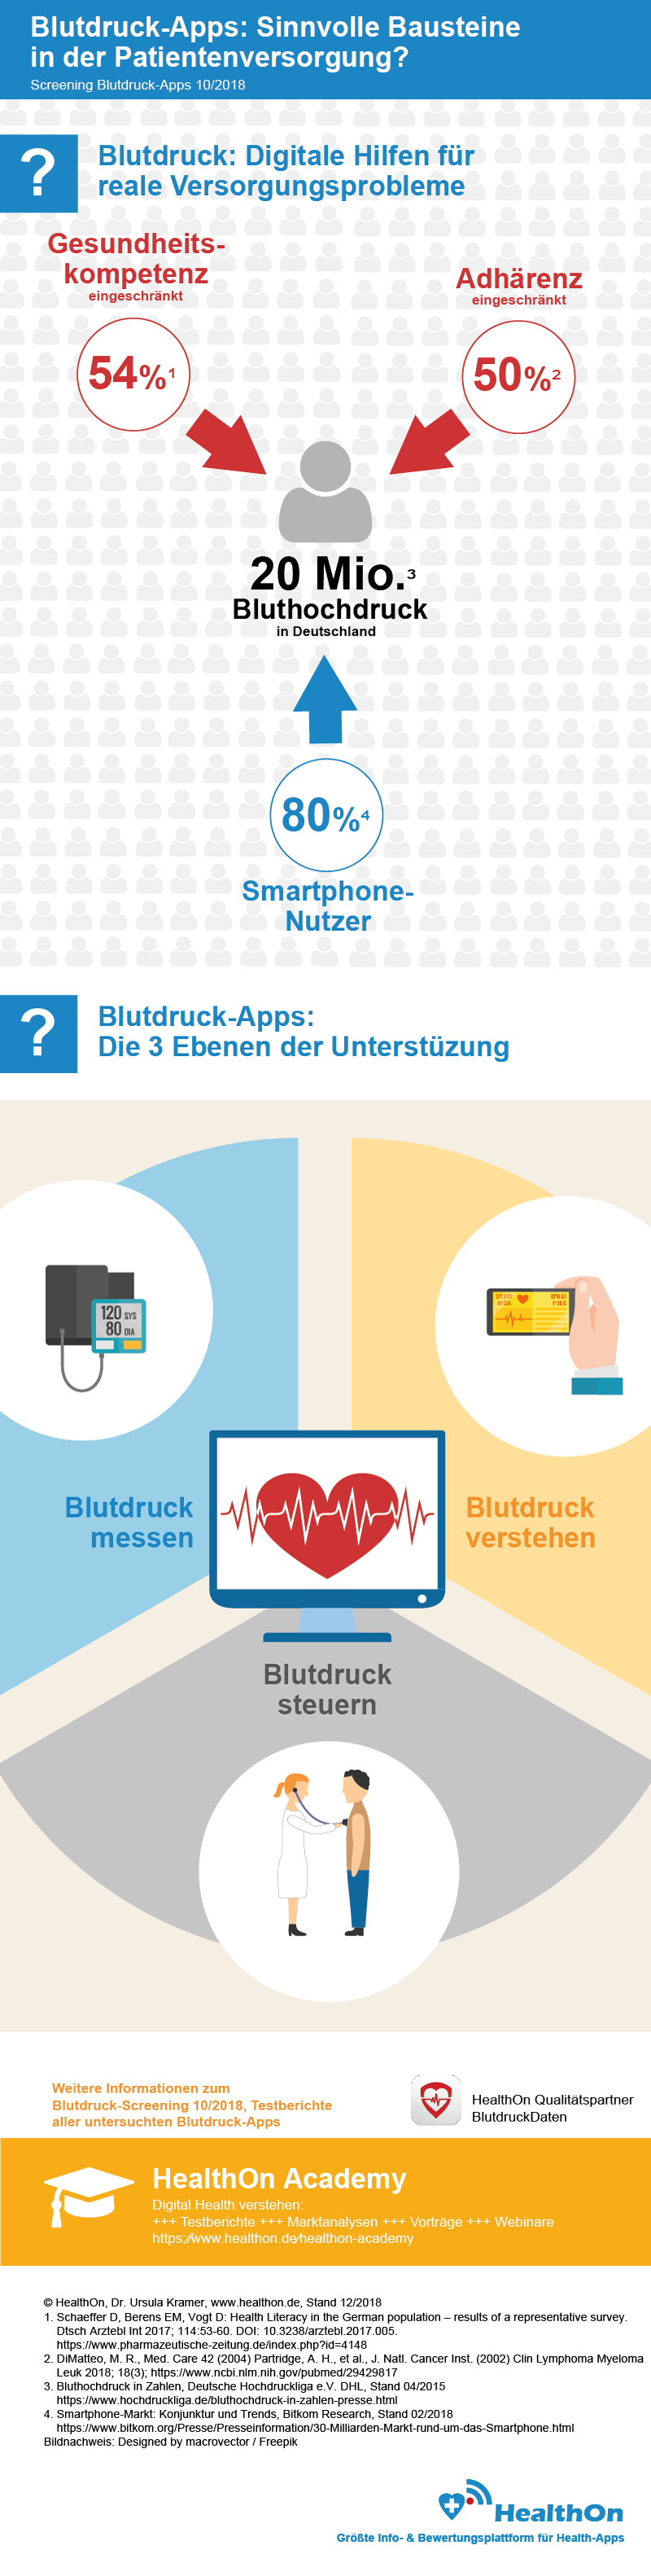 Blutdruck-Apps: Sinnvolle Bausteine in der Patientenversorgung? Screening Blutdruck-Apps 10/2018